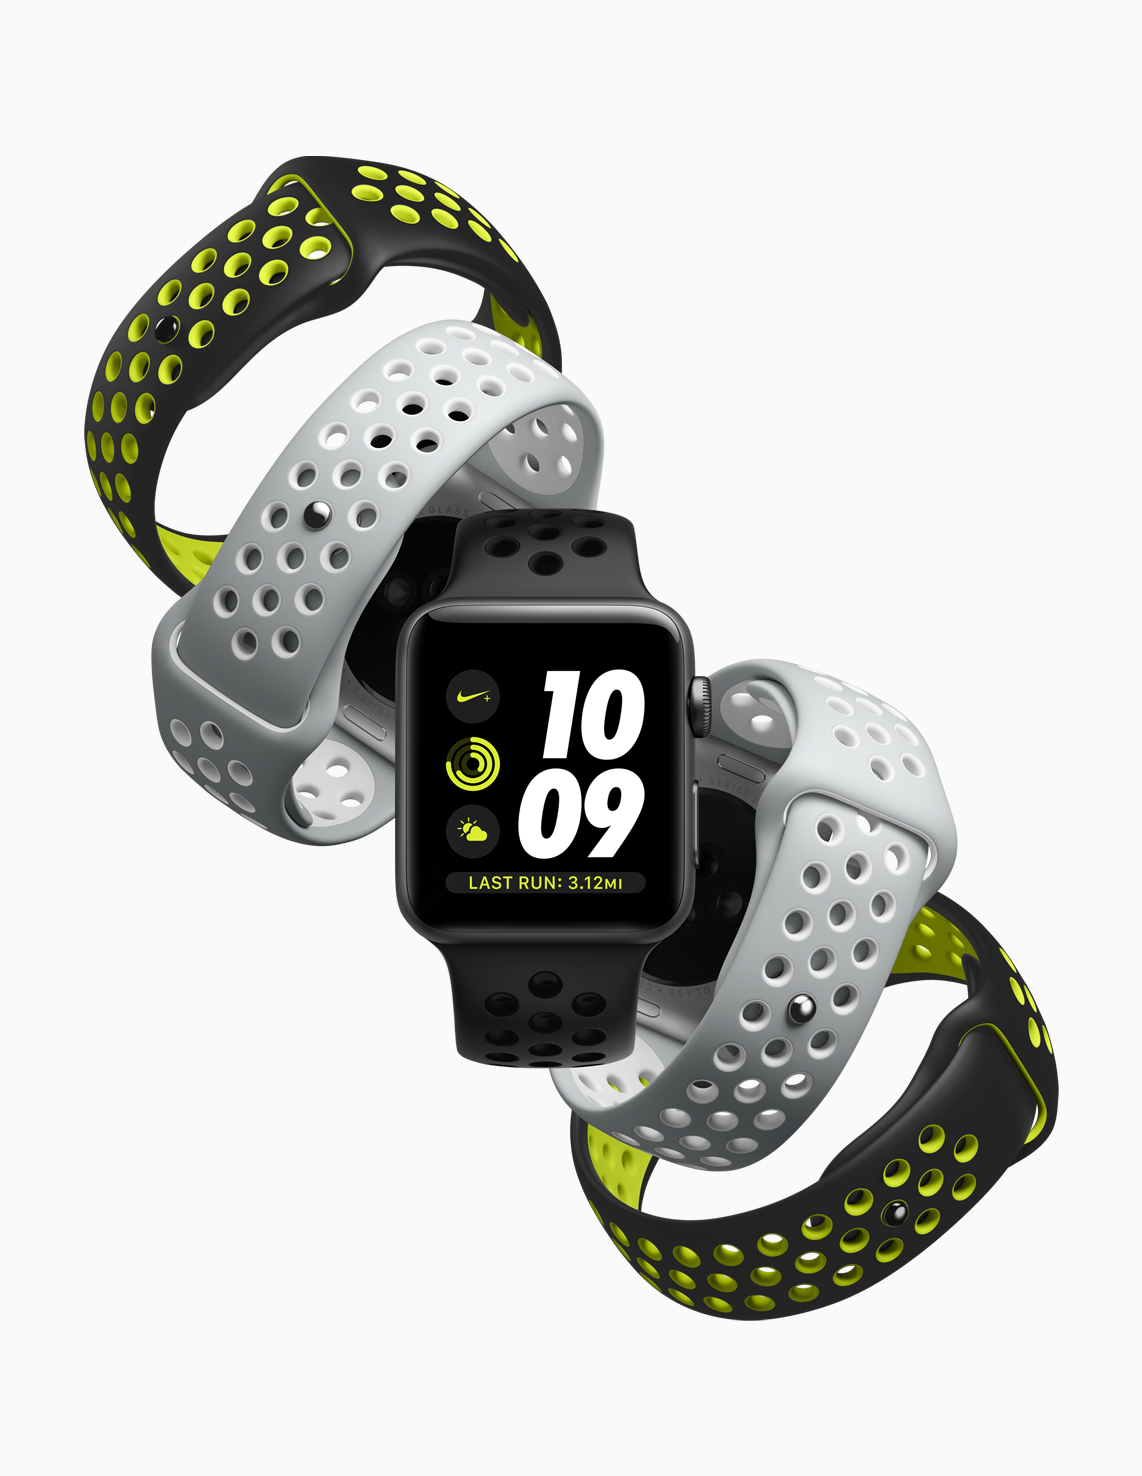 Tali Apple Watch versi Nike kini dapat dibeli secara terpisah